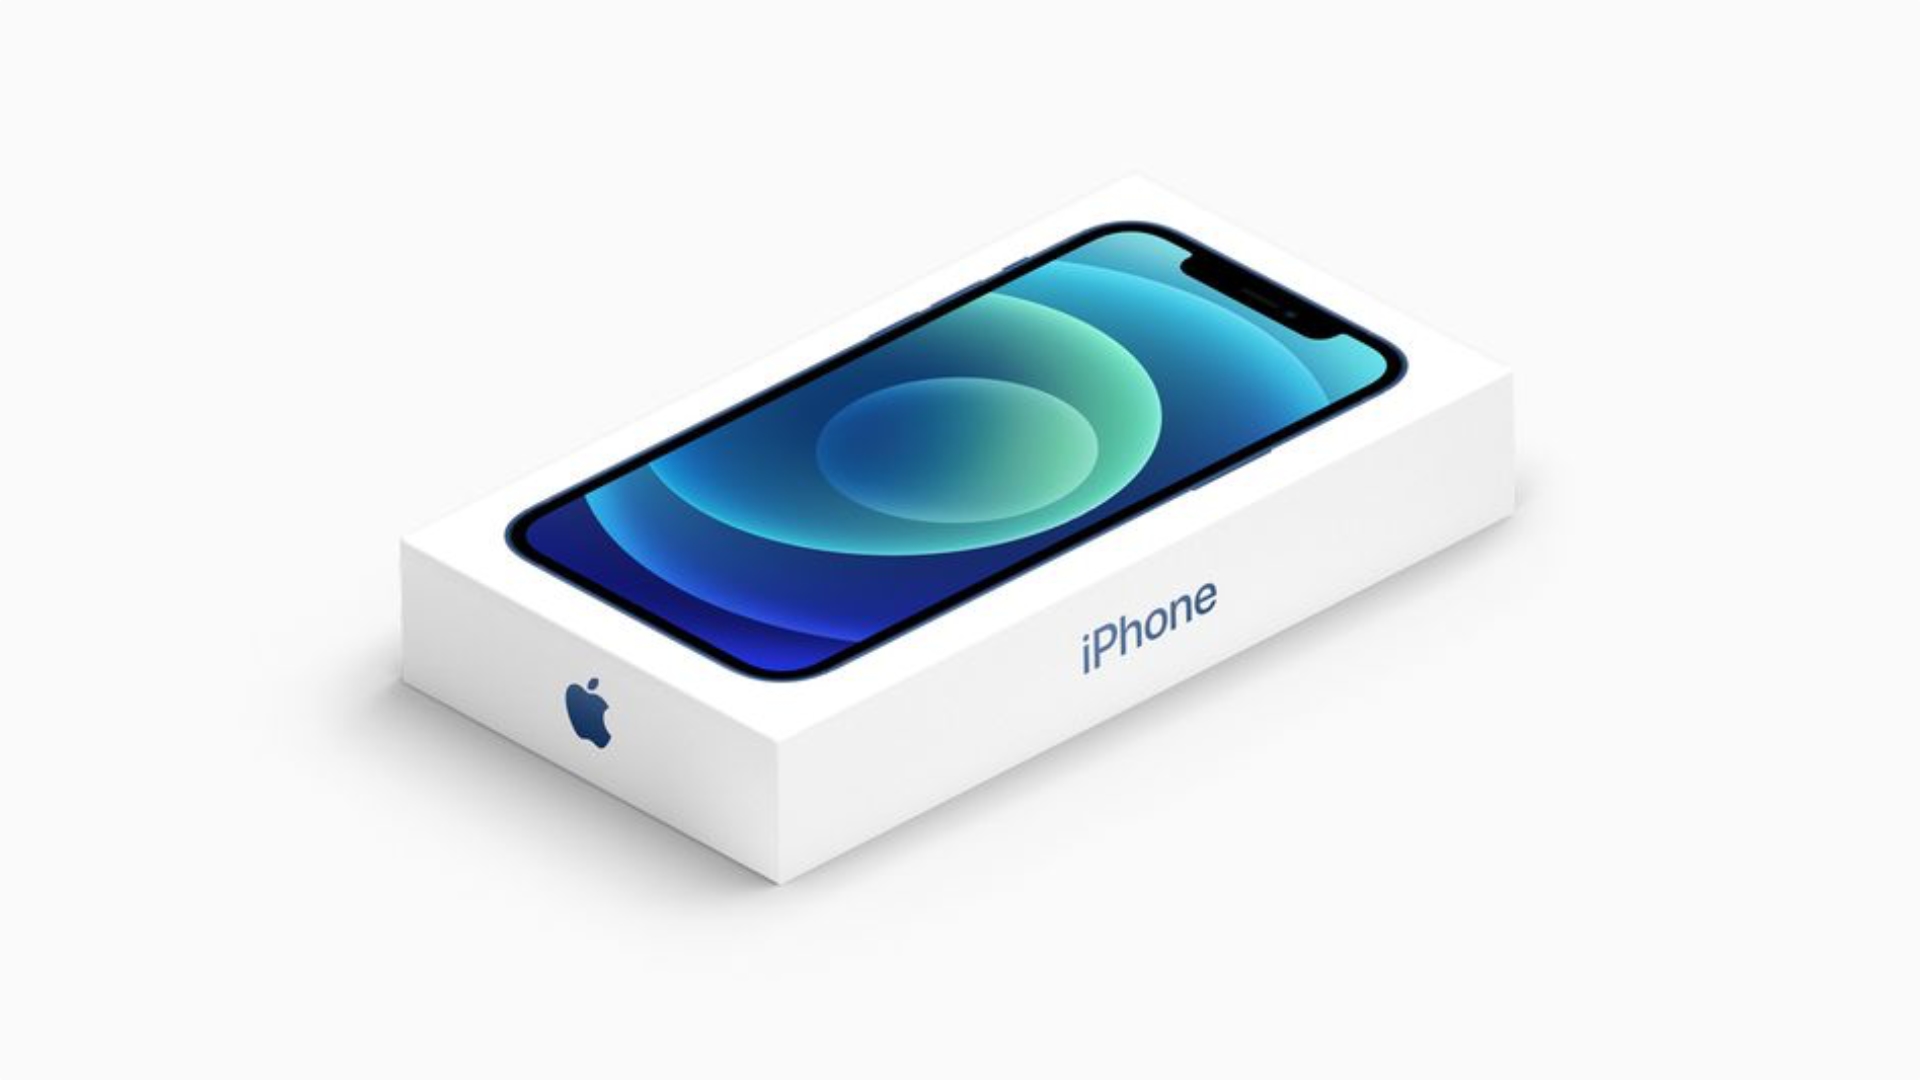 iphone in a box